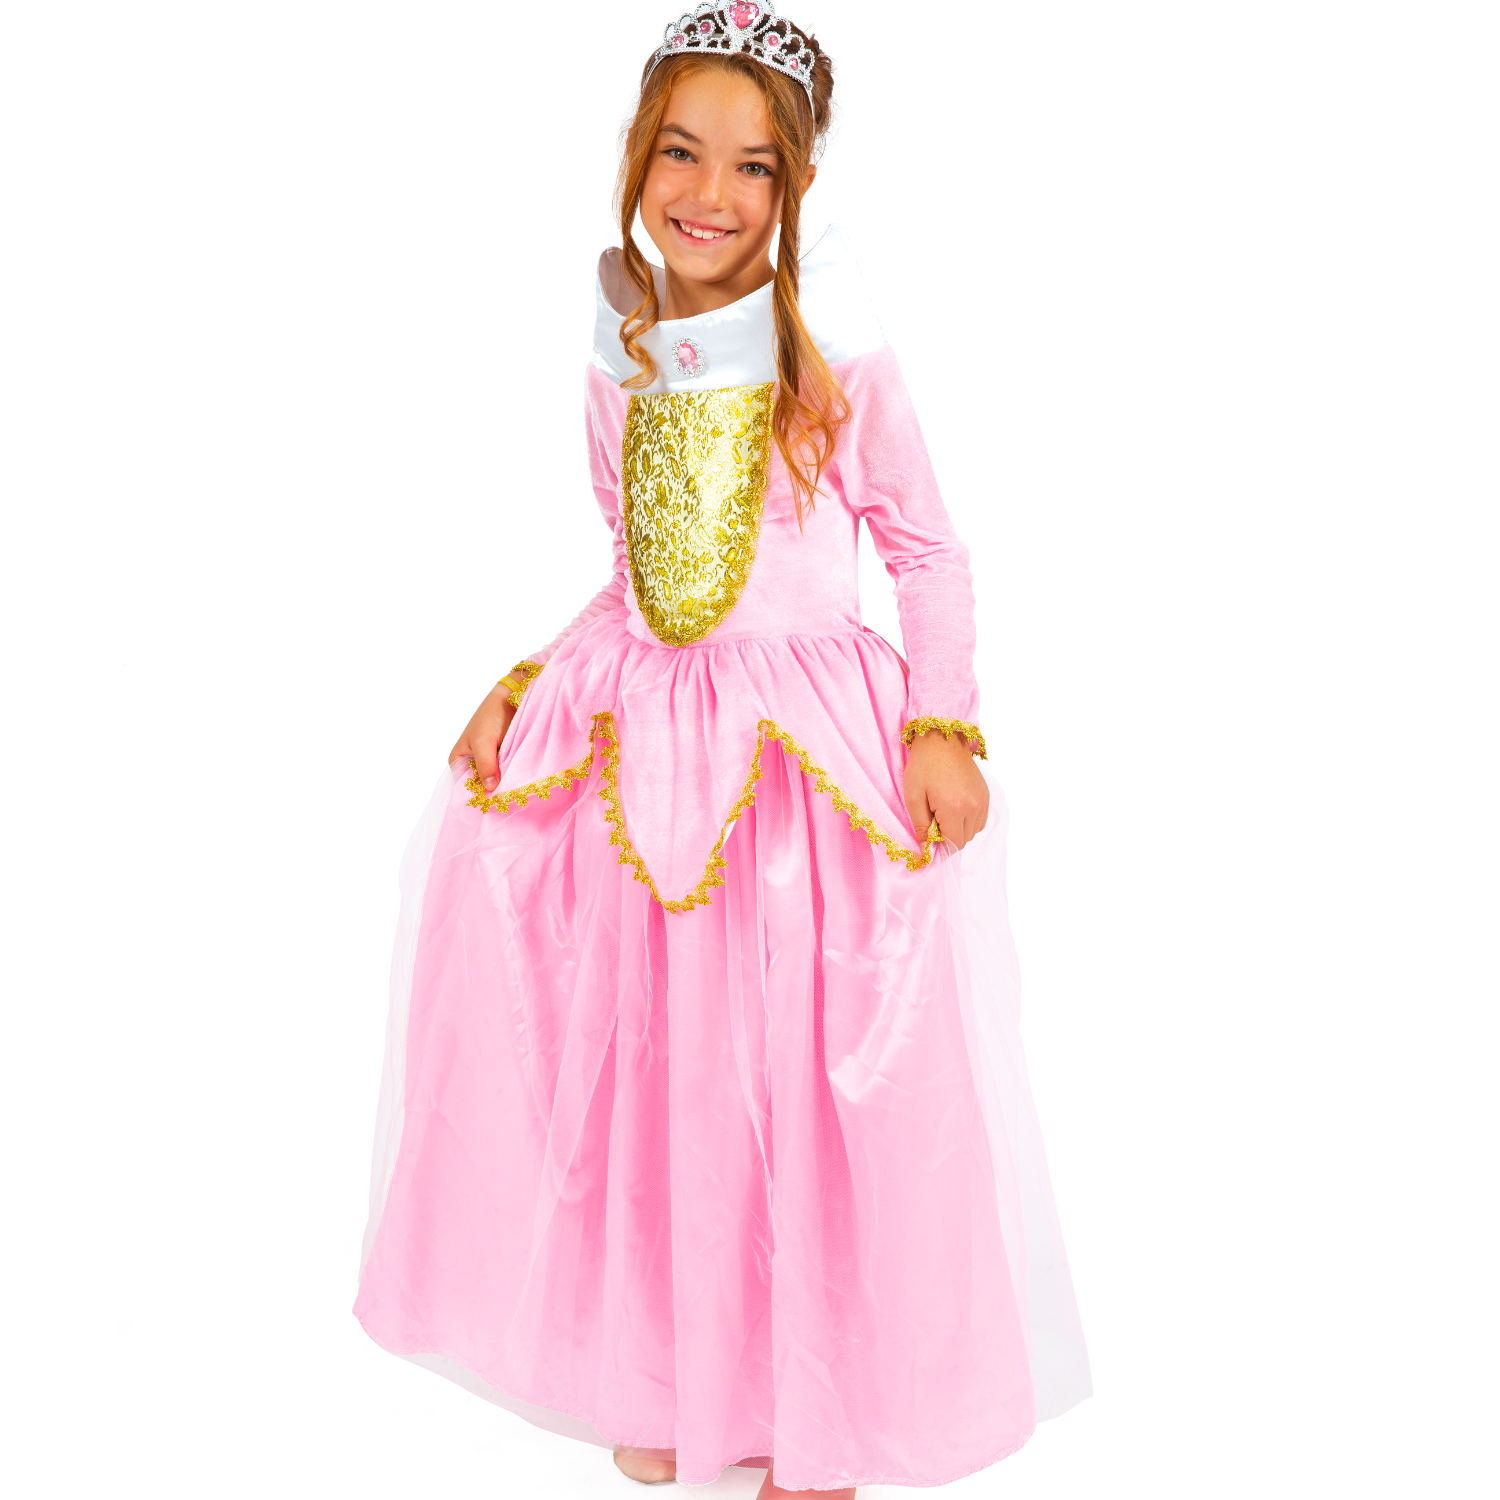 Costume da principessa del ghiaccio disponibile in diverse taglie - 